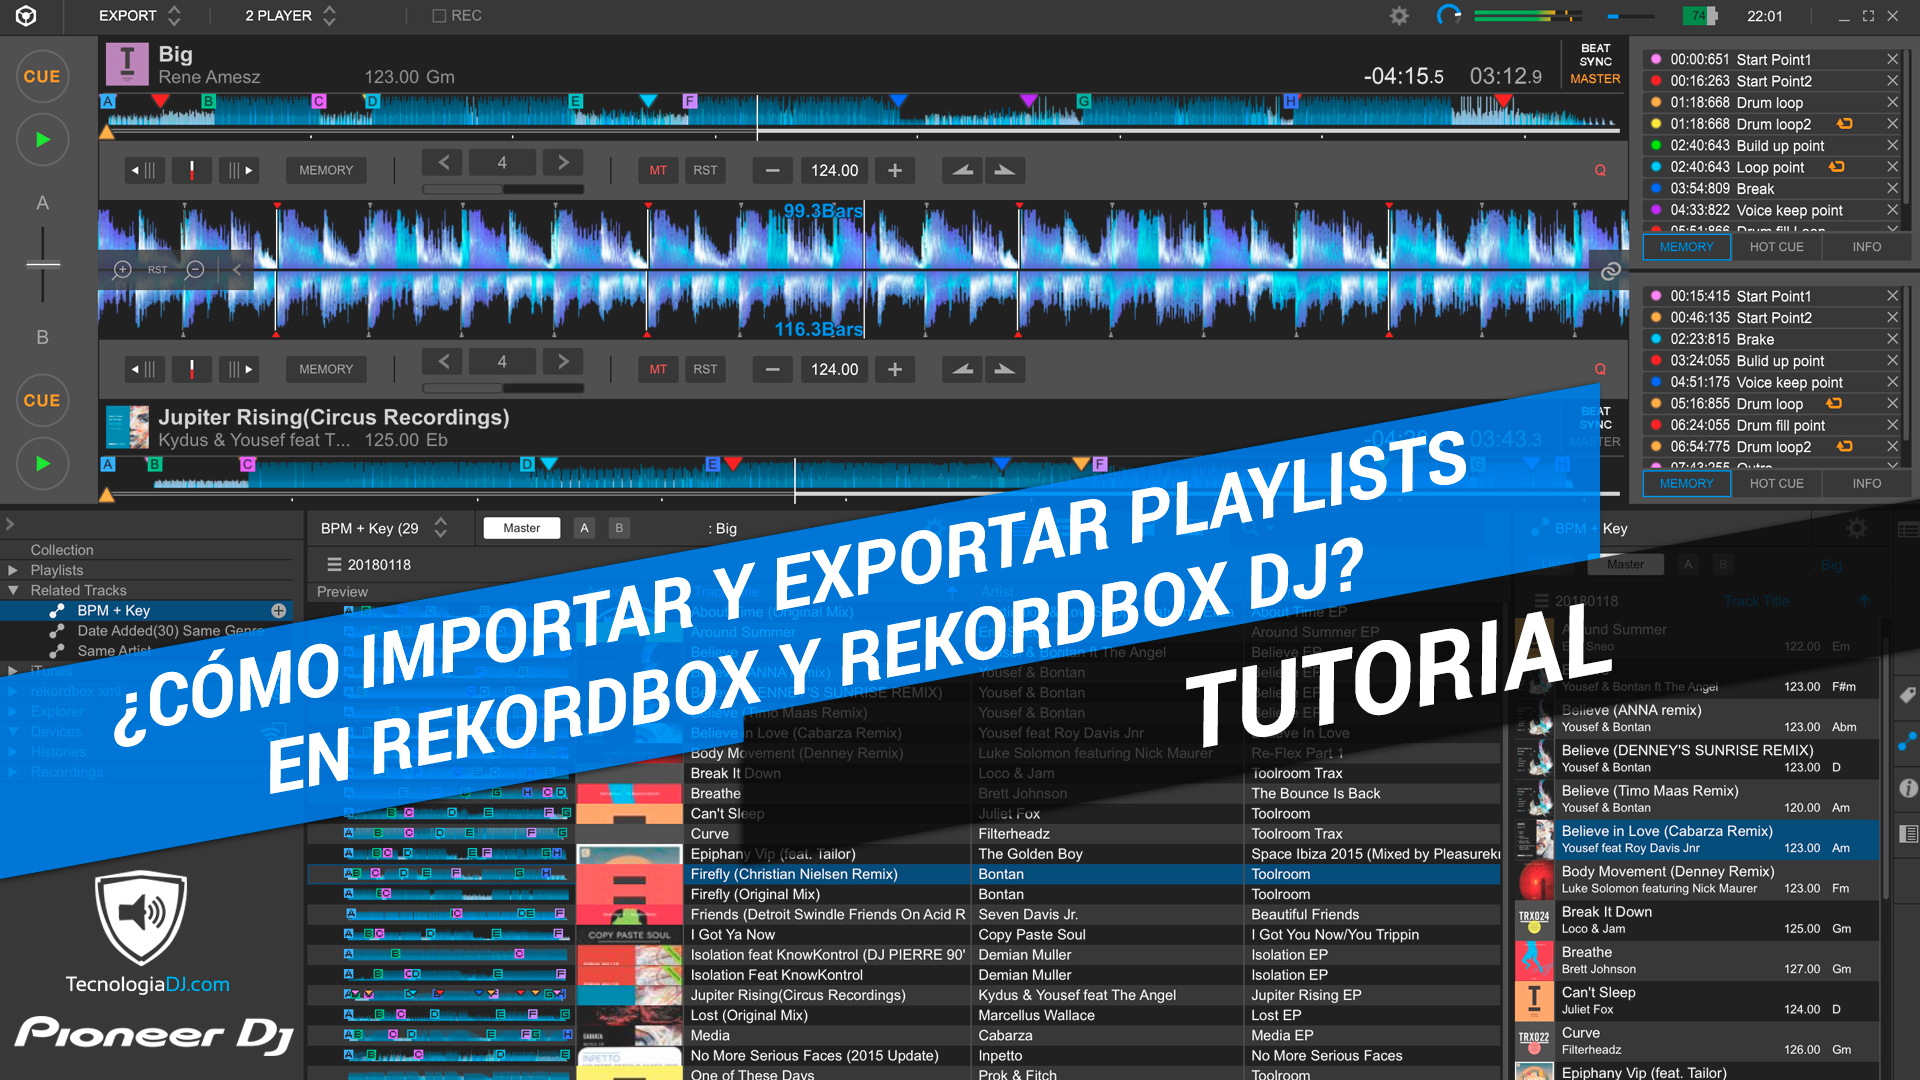 ¿Cómo crear, importar y exportar correctamente playlists en Rekordbox y Rekordbox DJ?